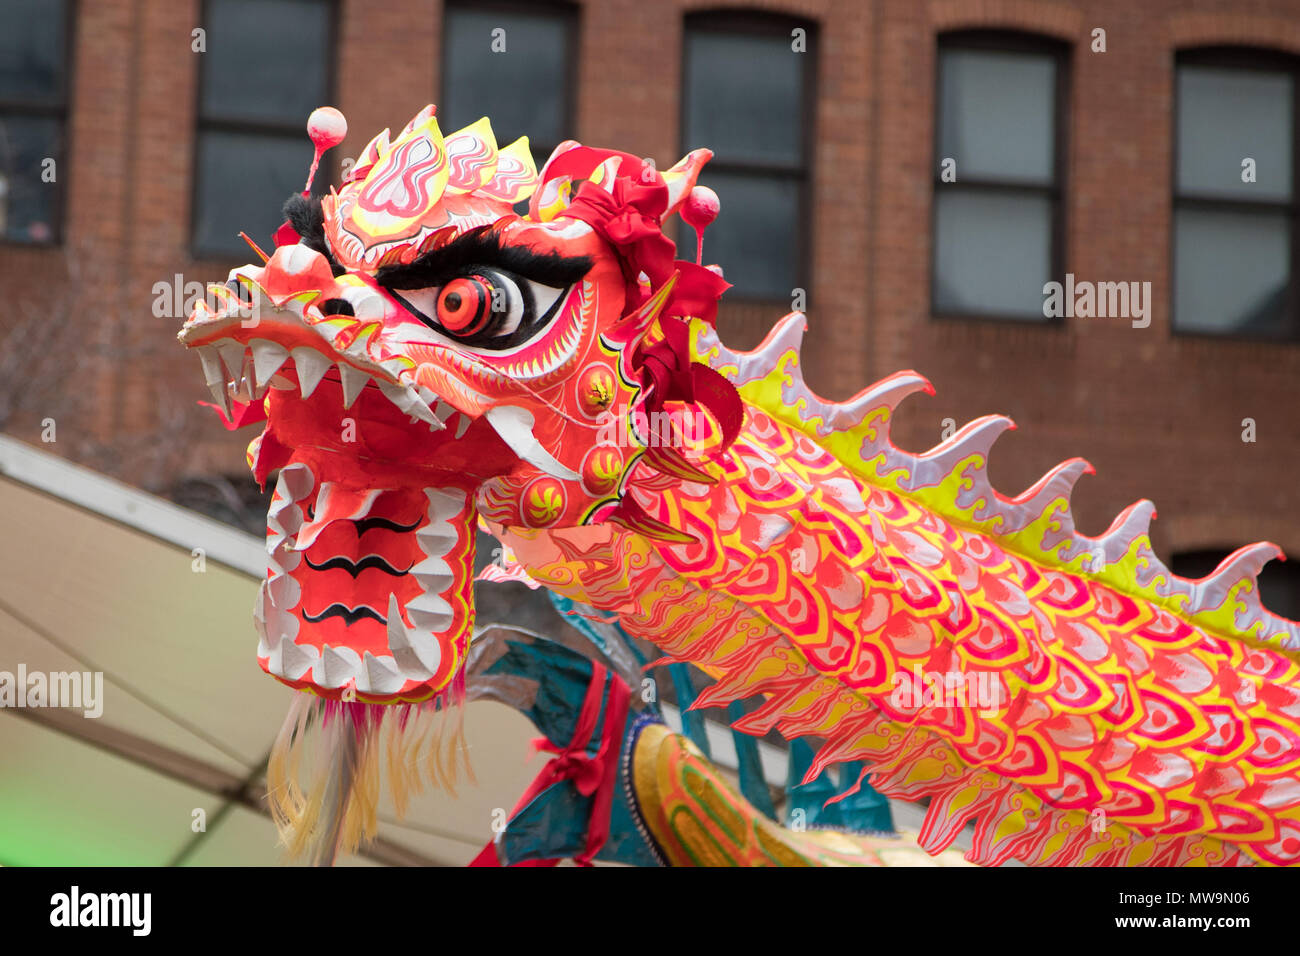 Chinesisches Neues Jahr Drachen, wie es durch die Straßen für die Feierlichkeiten zum Chinesischen Neuen Jahr in Manchester, Großbritannien getanzt Stockfoto